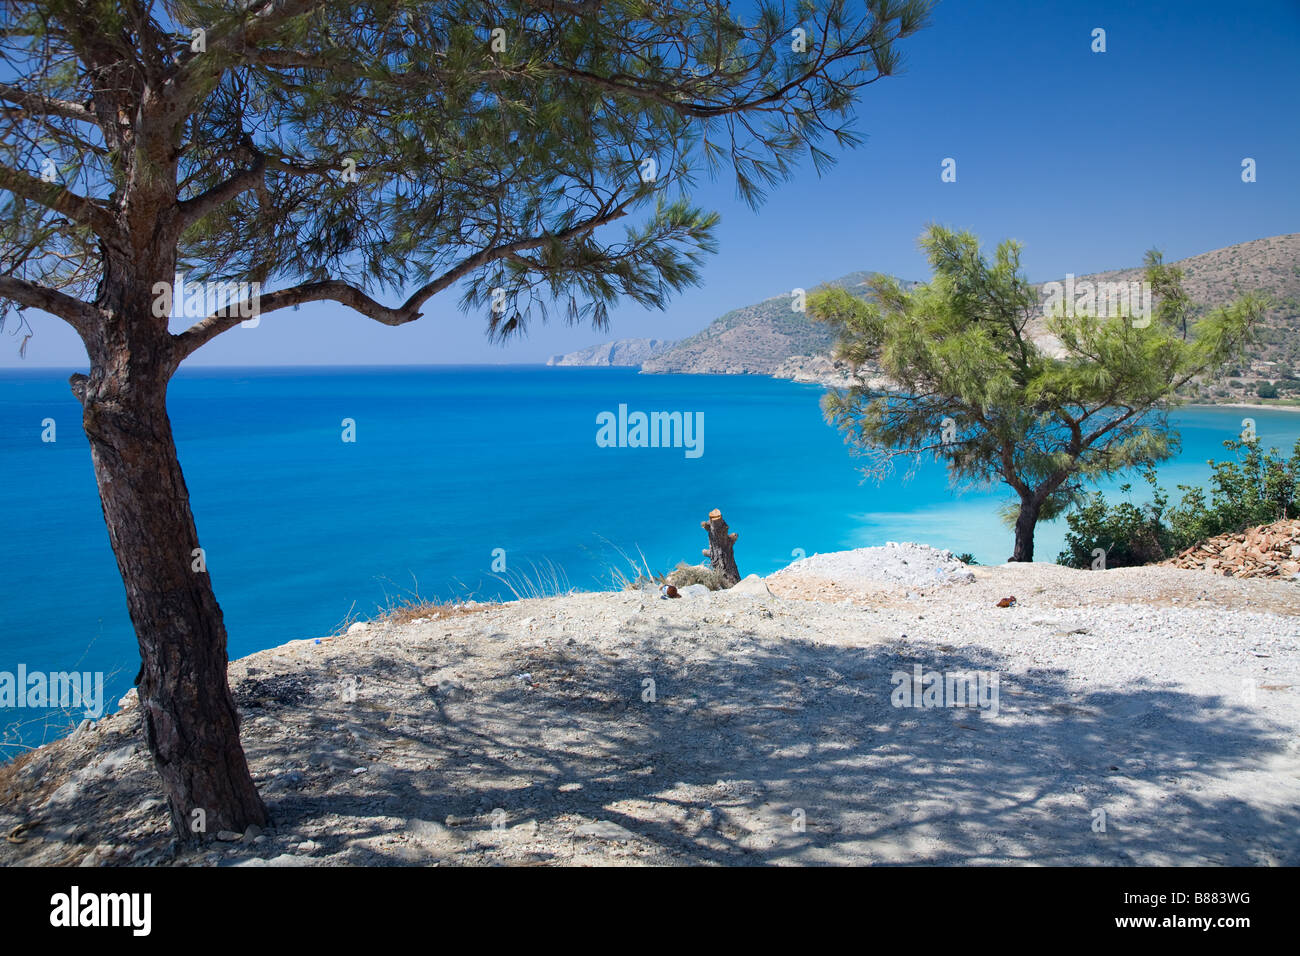 A beautiful blue sea on the Aegean coast in Turkey Stock Photo